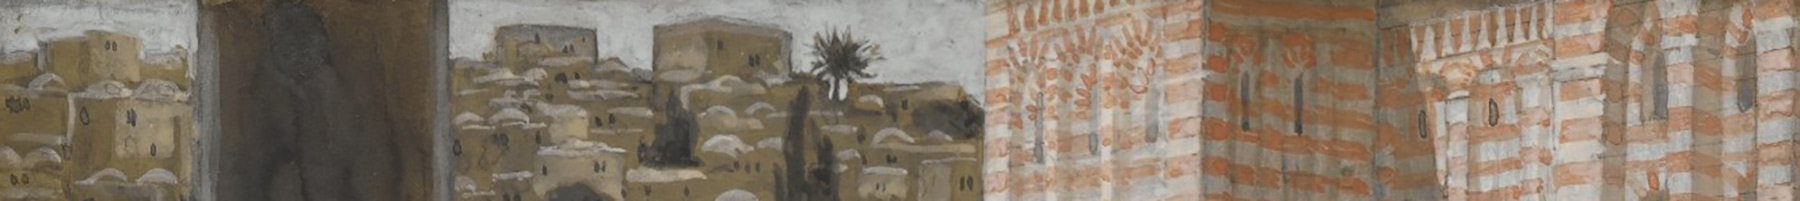 painting of buildings in Jerusalem